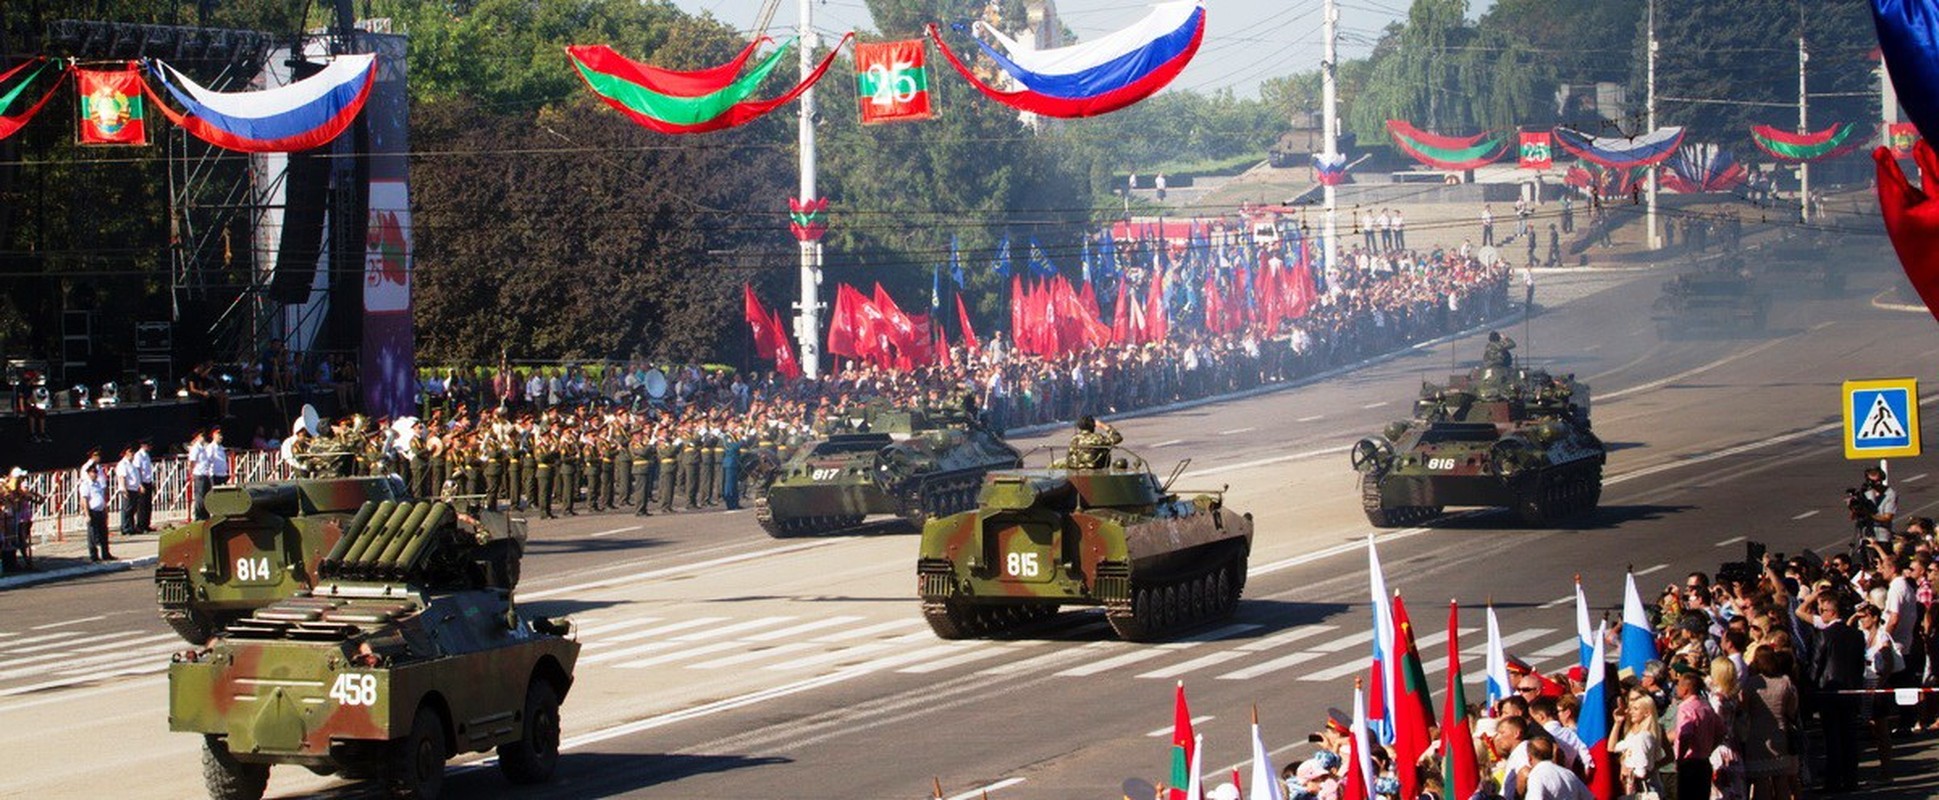 Luc luong gin giu hoa binh Nga se bi mac ket o Transnistria?-Hinh-6